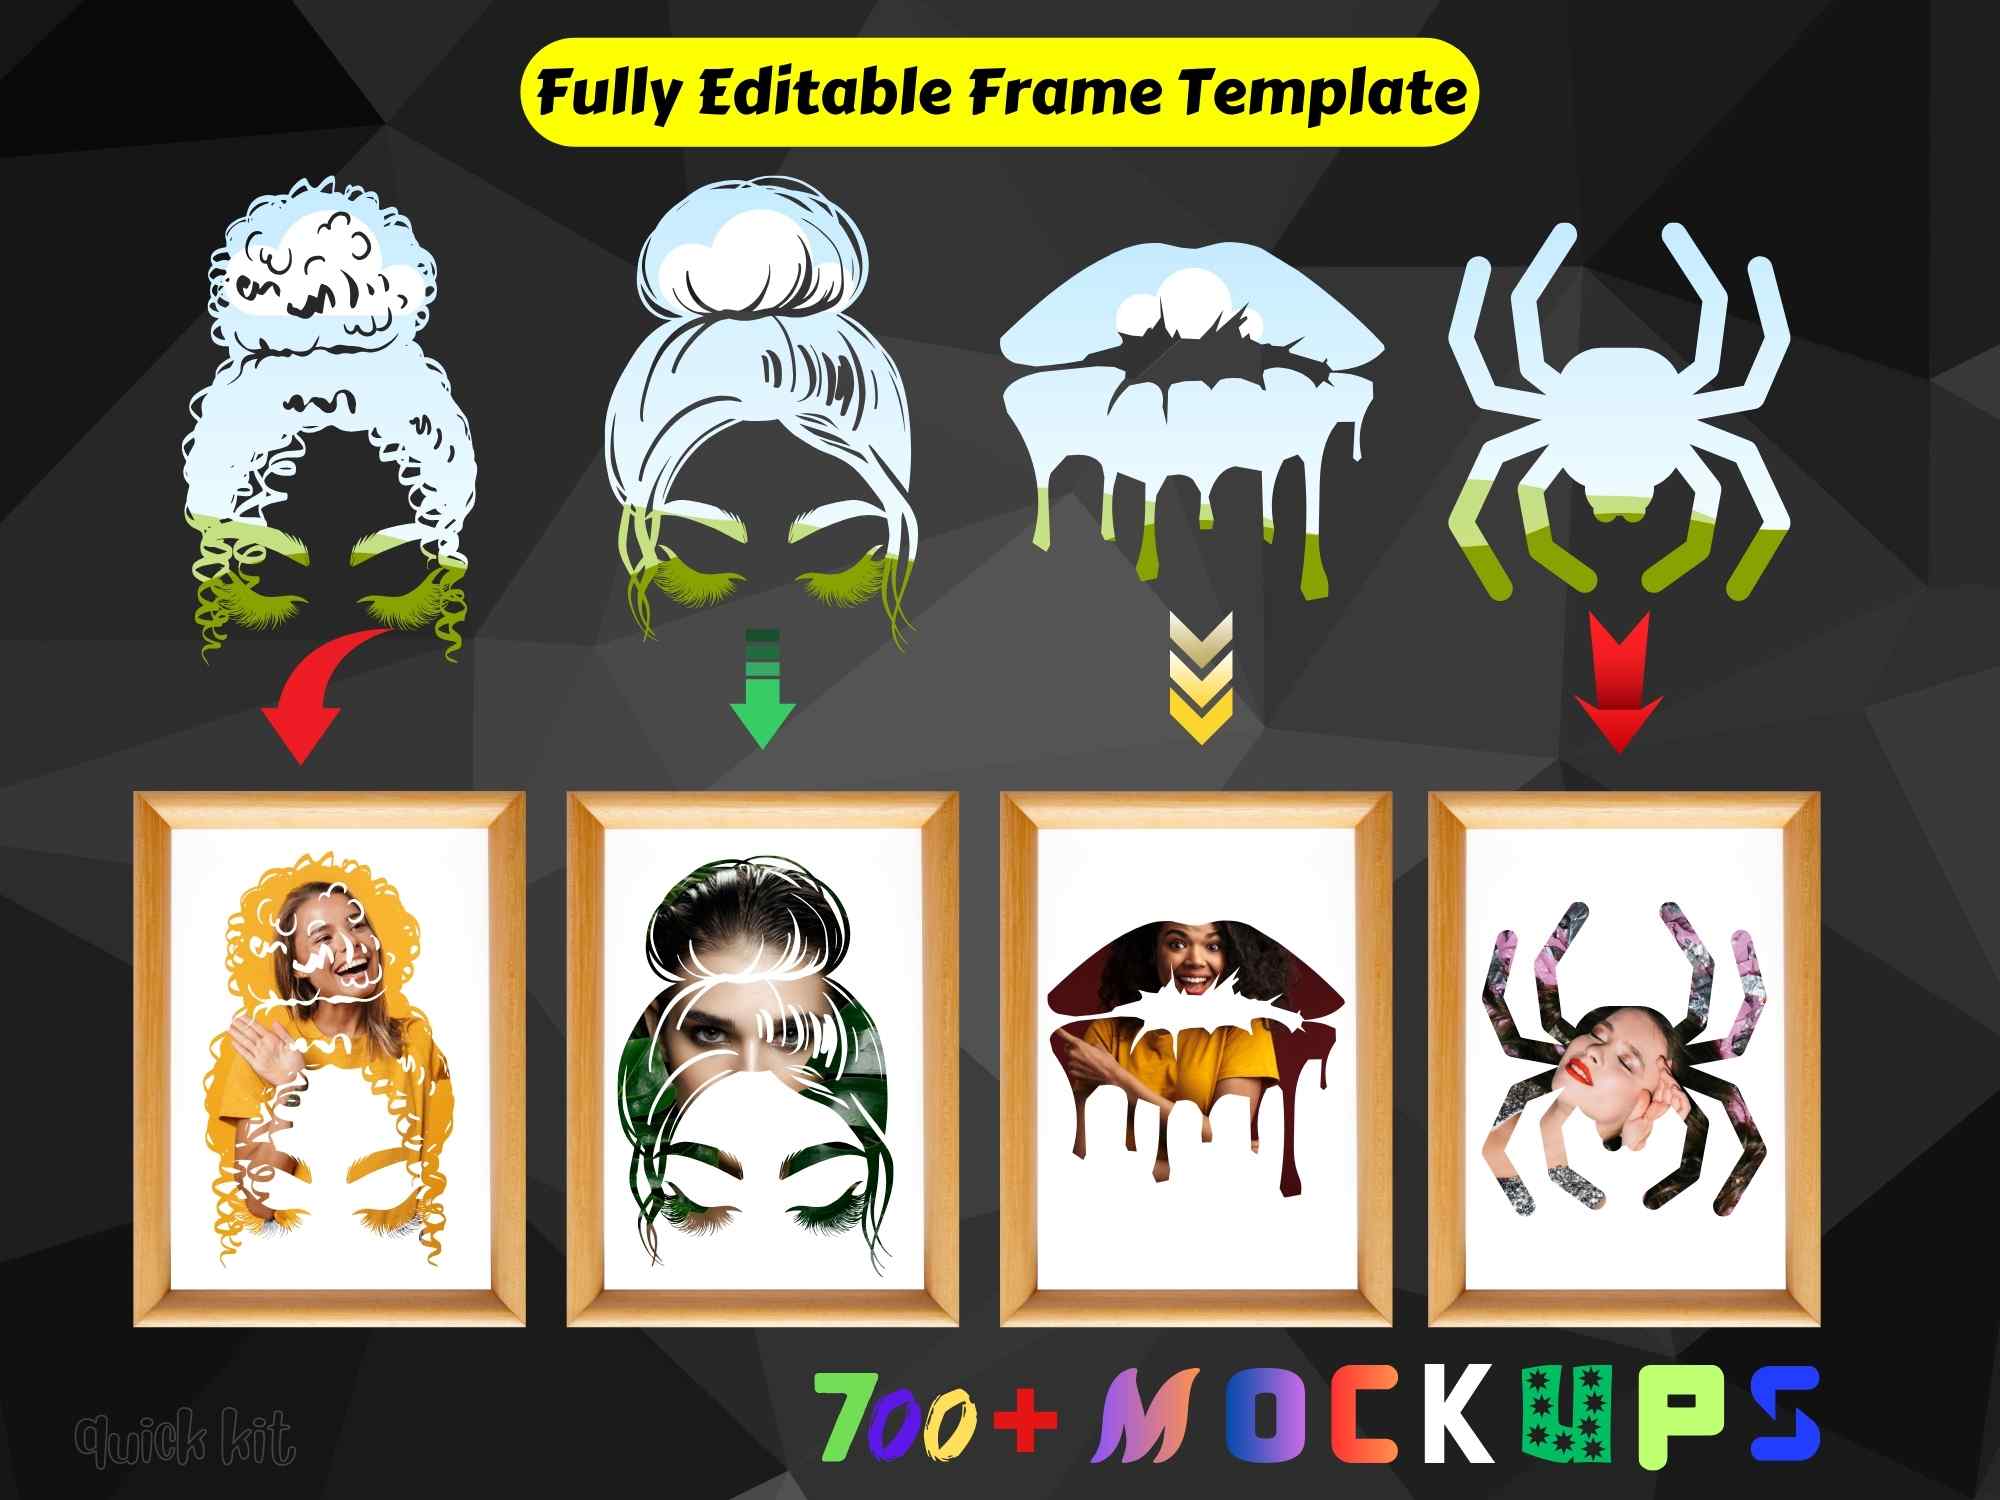 Frame Bundle Editable Canva Frames Template Easy Drag and Drop mockup frame Buy Etsy shop